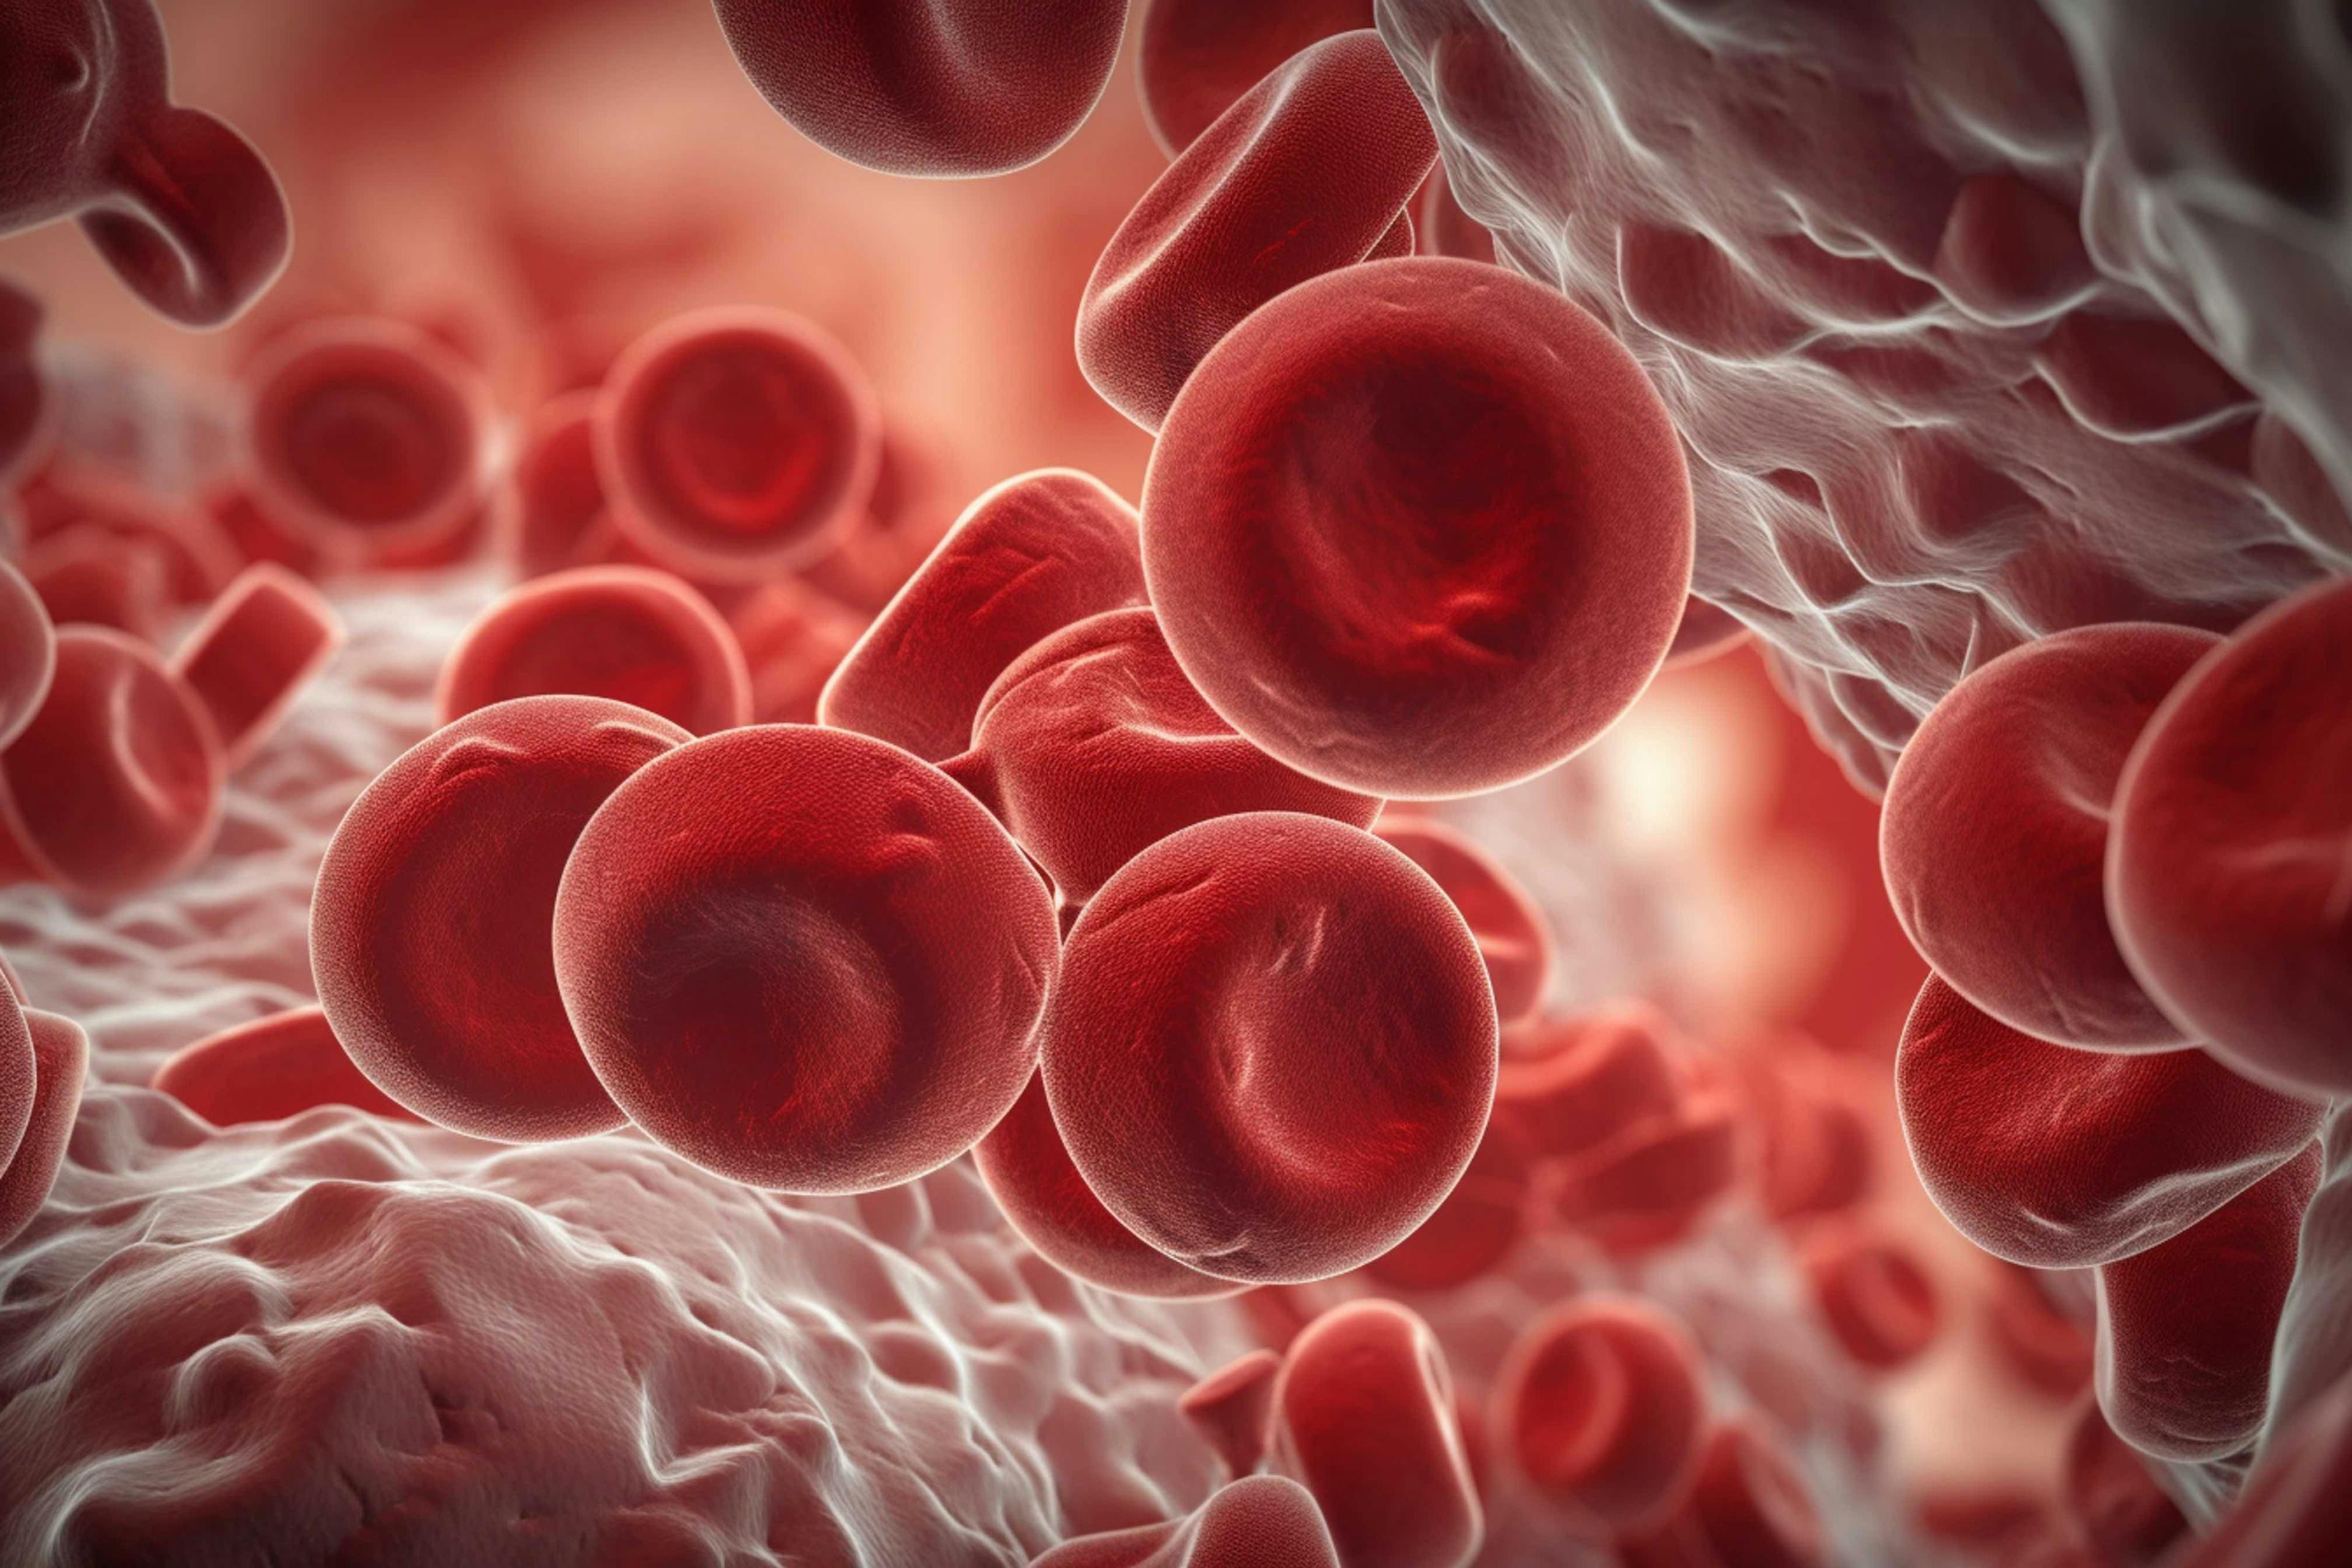 Blood Cells | Image credit: Катерина Євтехова - stock.adobe.com